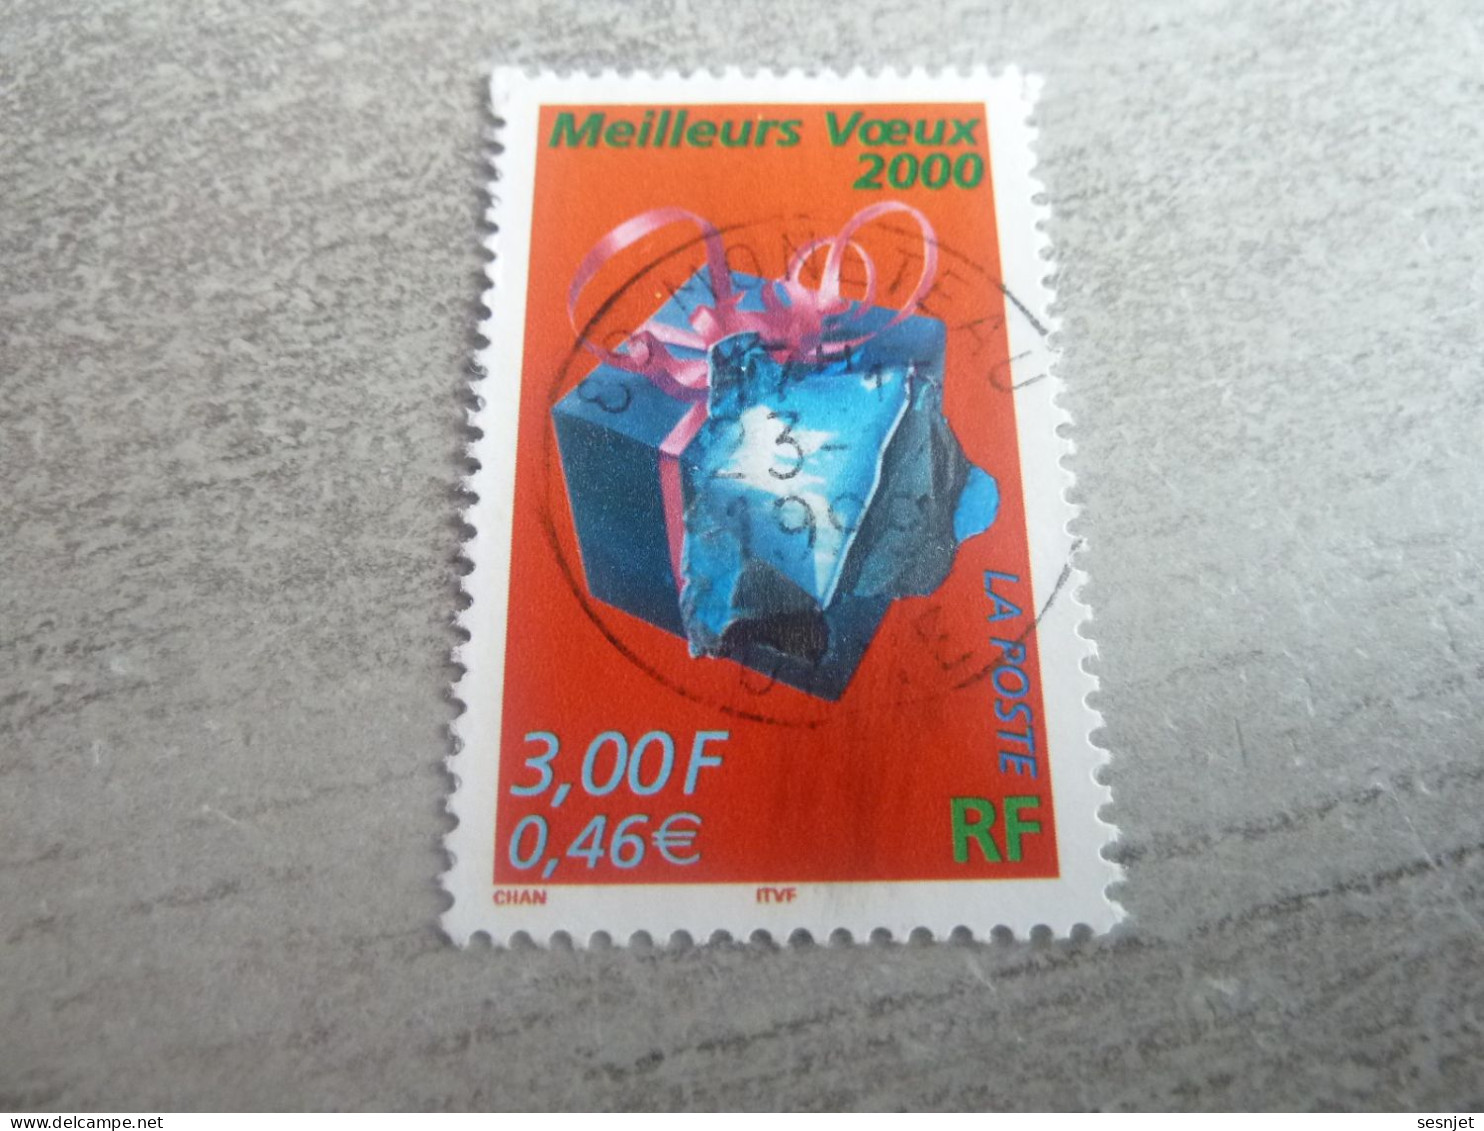 Meilleurs Voeux 2000 - 3f. (0.46 €) - Yt 3290 - Multicolore - Oblitéré - Année 1999 - - Used Stamps